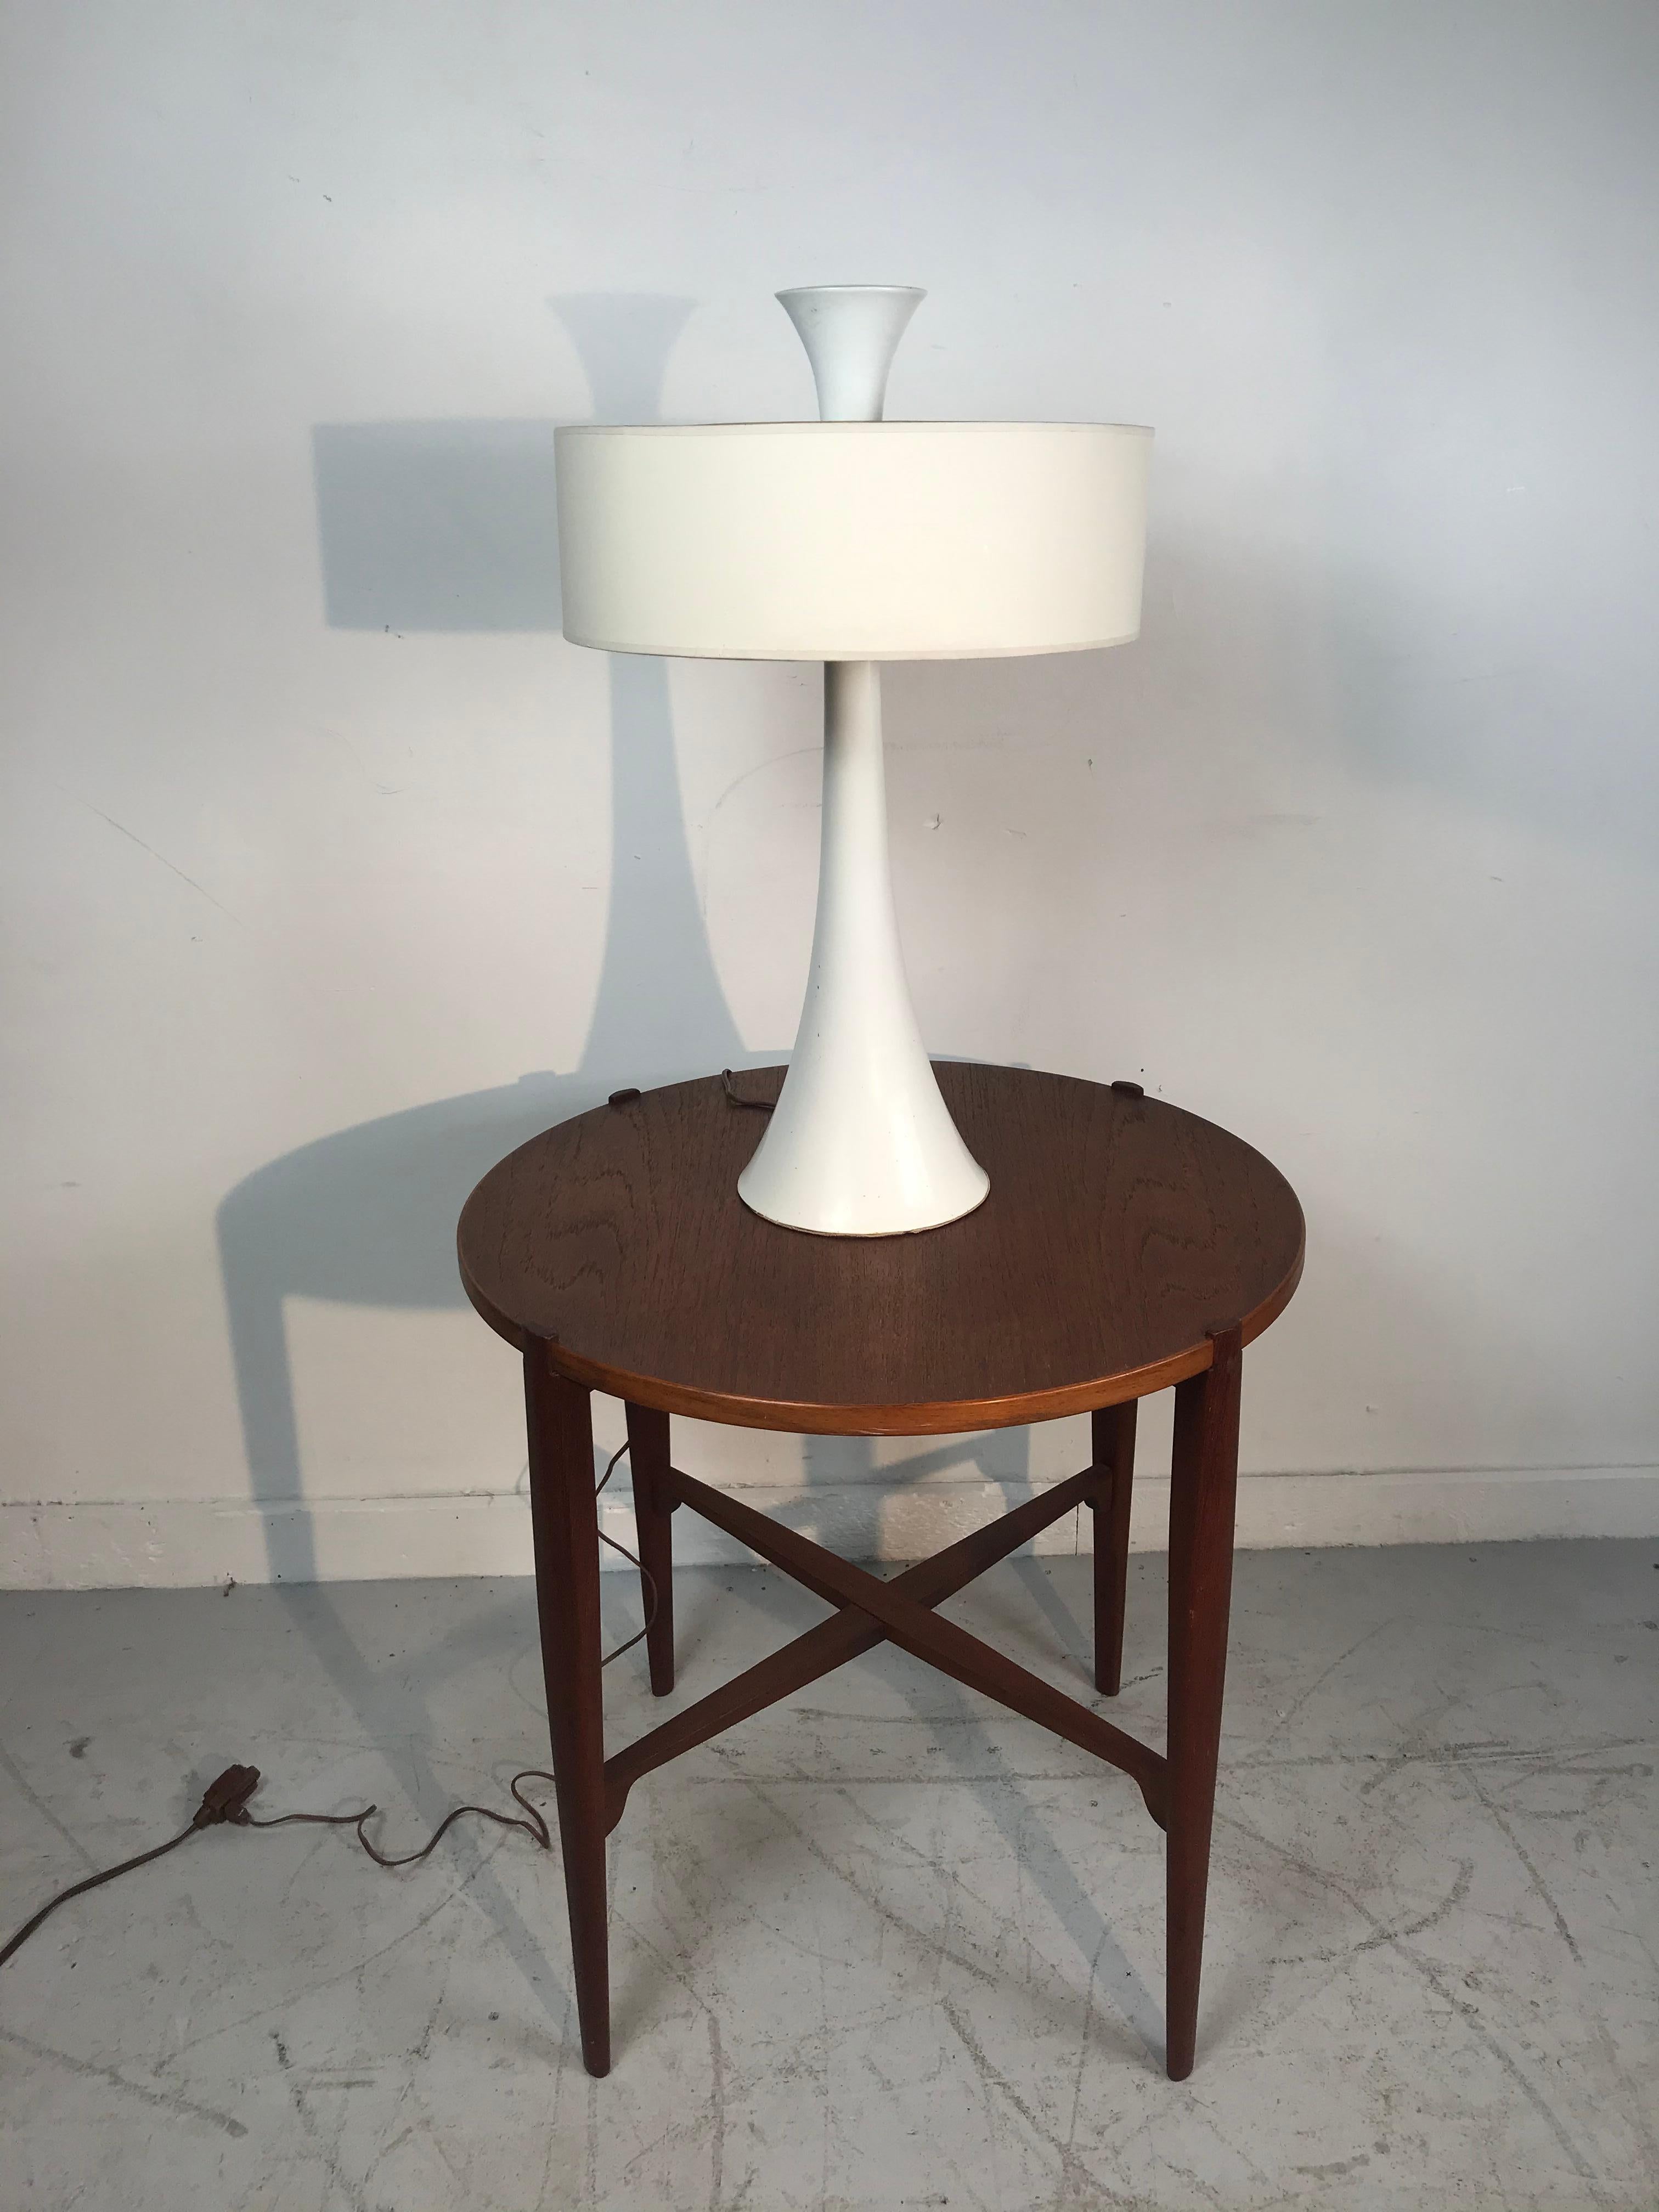 Elegante weiße modernistische Tischleuchte mit Trompetensockel, die Gerald Thurston für Lightolier zugeschrieben wird. Lackierter Metallsockel in Trompetenform mit überdimensionalem Endstück. Behält den originalen weißen Zylinderlampenschirm